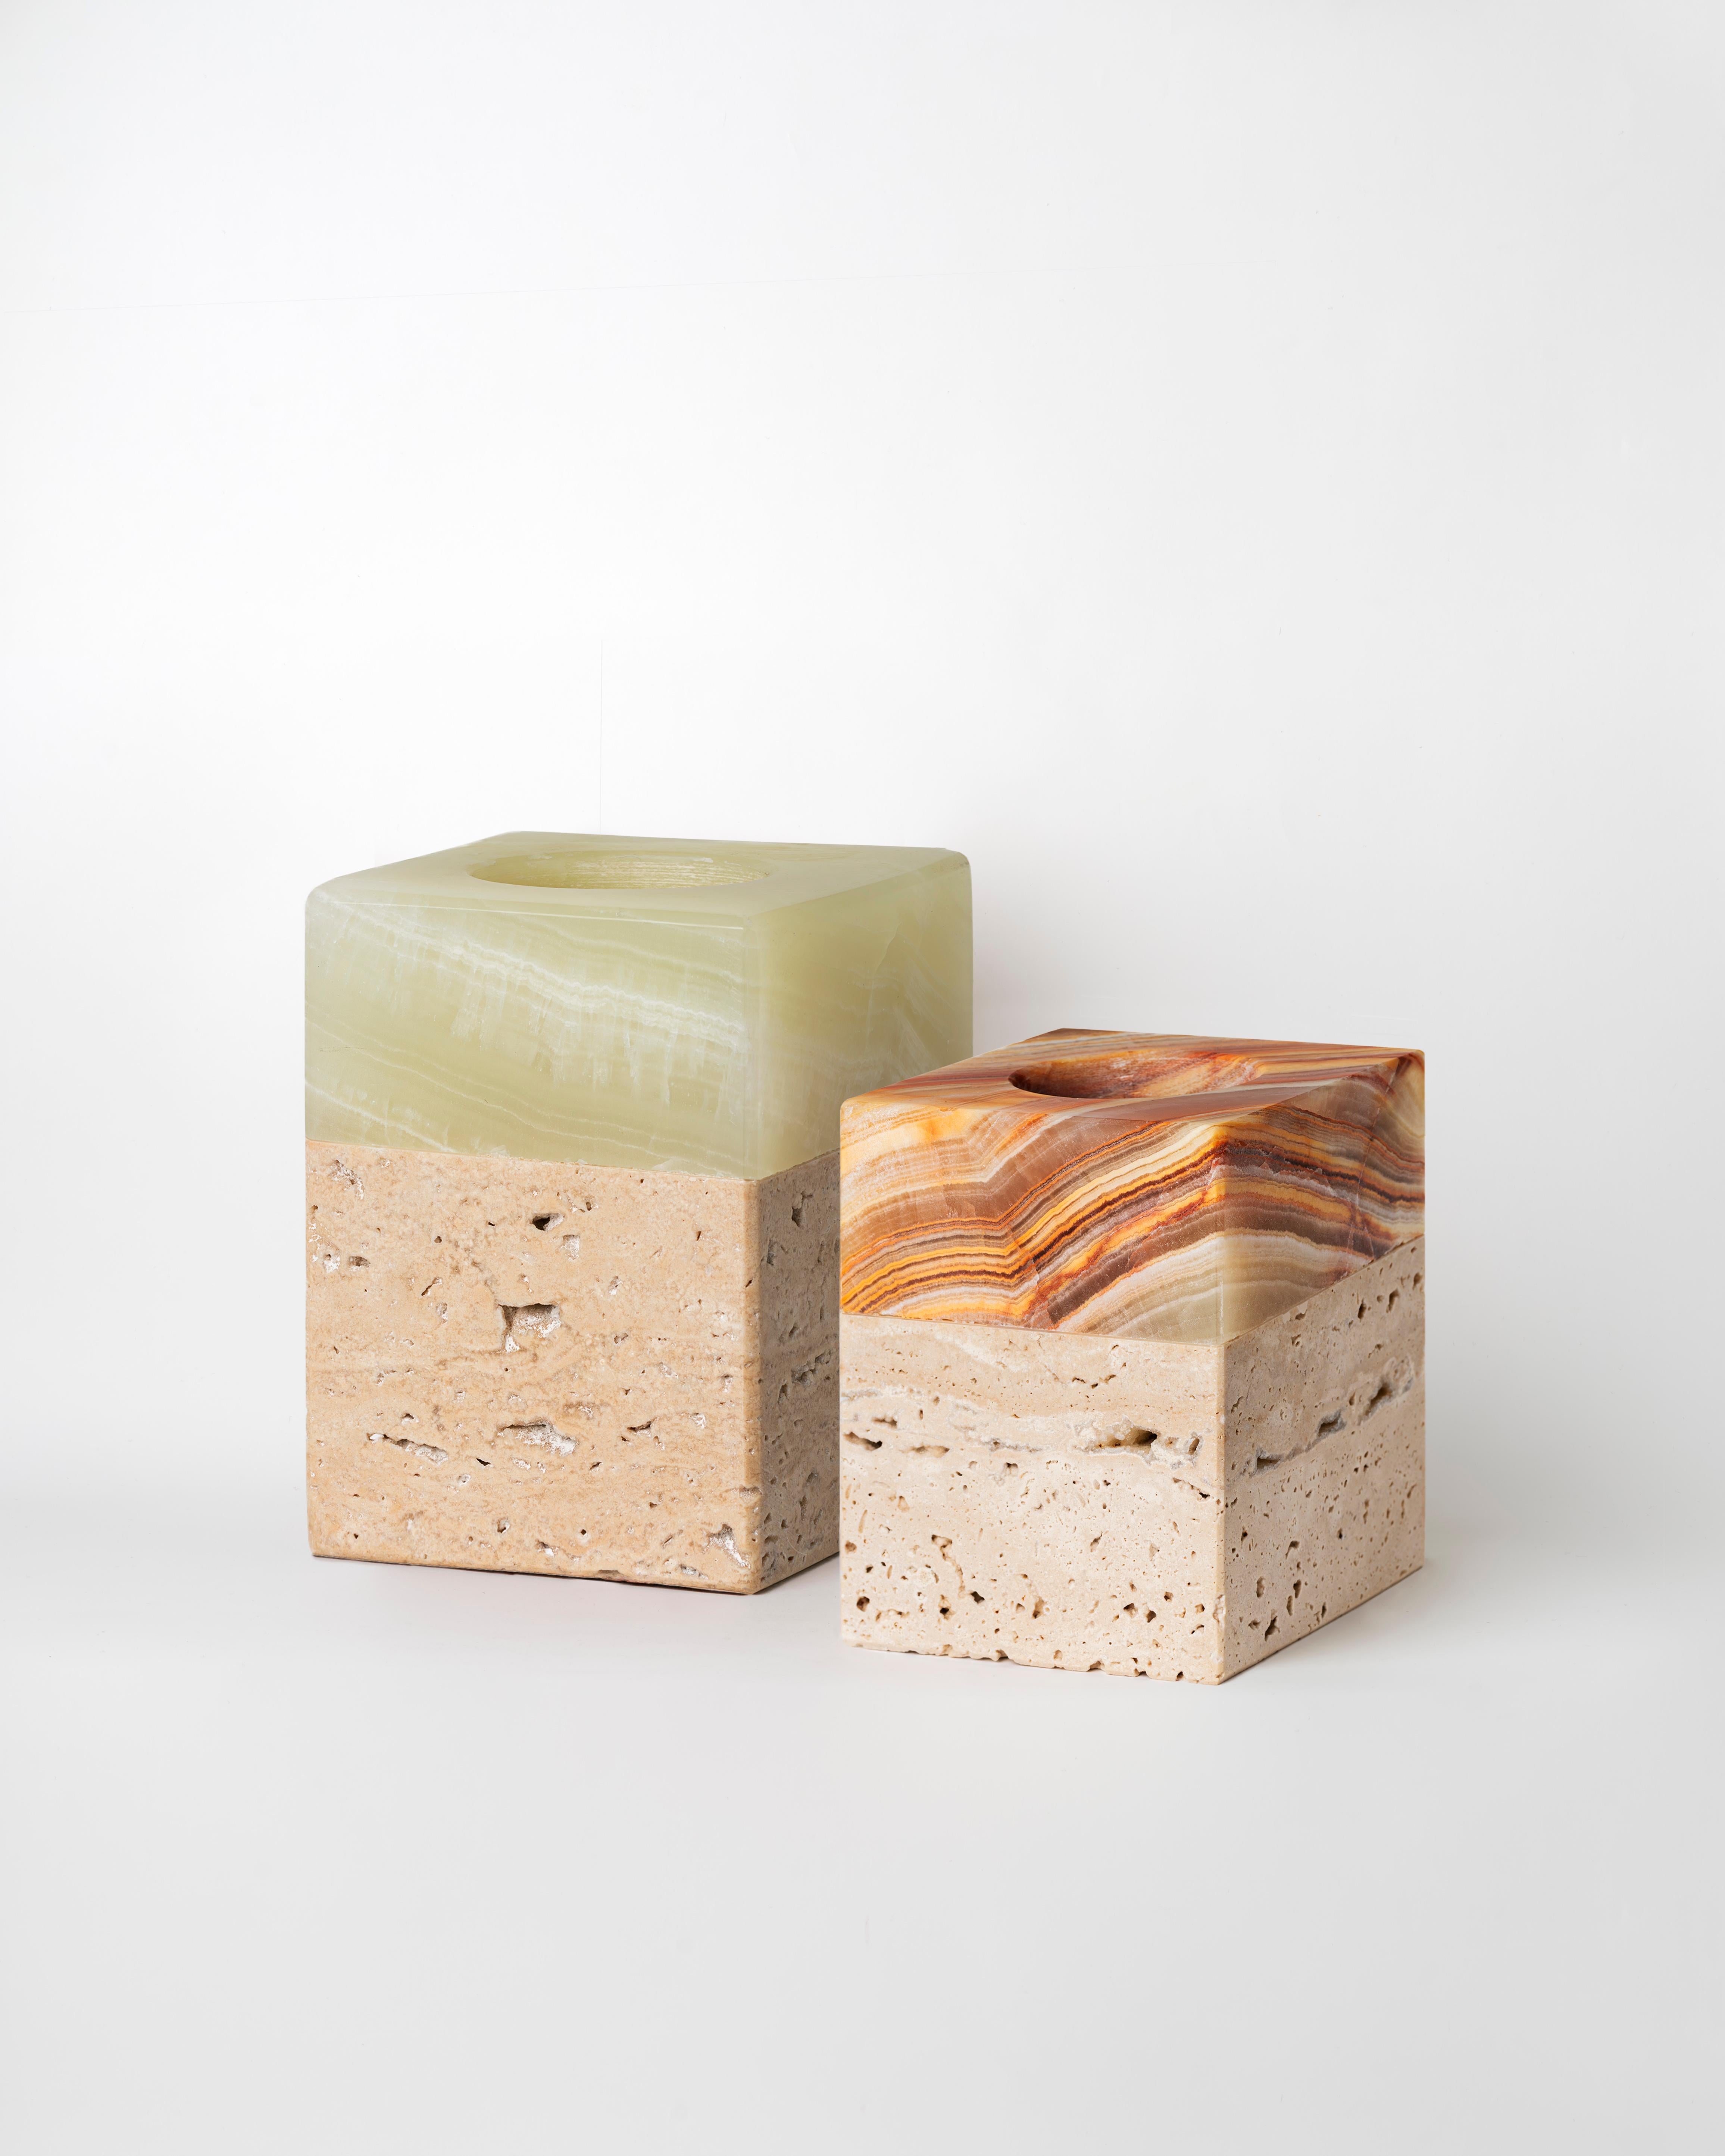 FEBE Candles ist eine Serie von rechteckigen Kerzenhaltern aus Naturstein, die in 4 Größen erhältlich sind. Der Sockel aus Travertin mit seiner unregelmäßigen Oberfläche trägt einen kostbaren Lampenschirm aus poliertem Onyx, der im Licht der